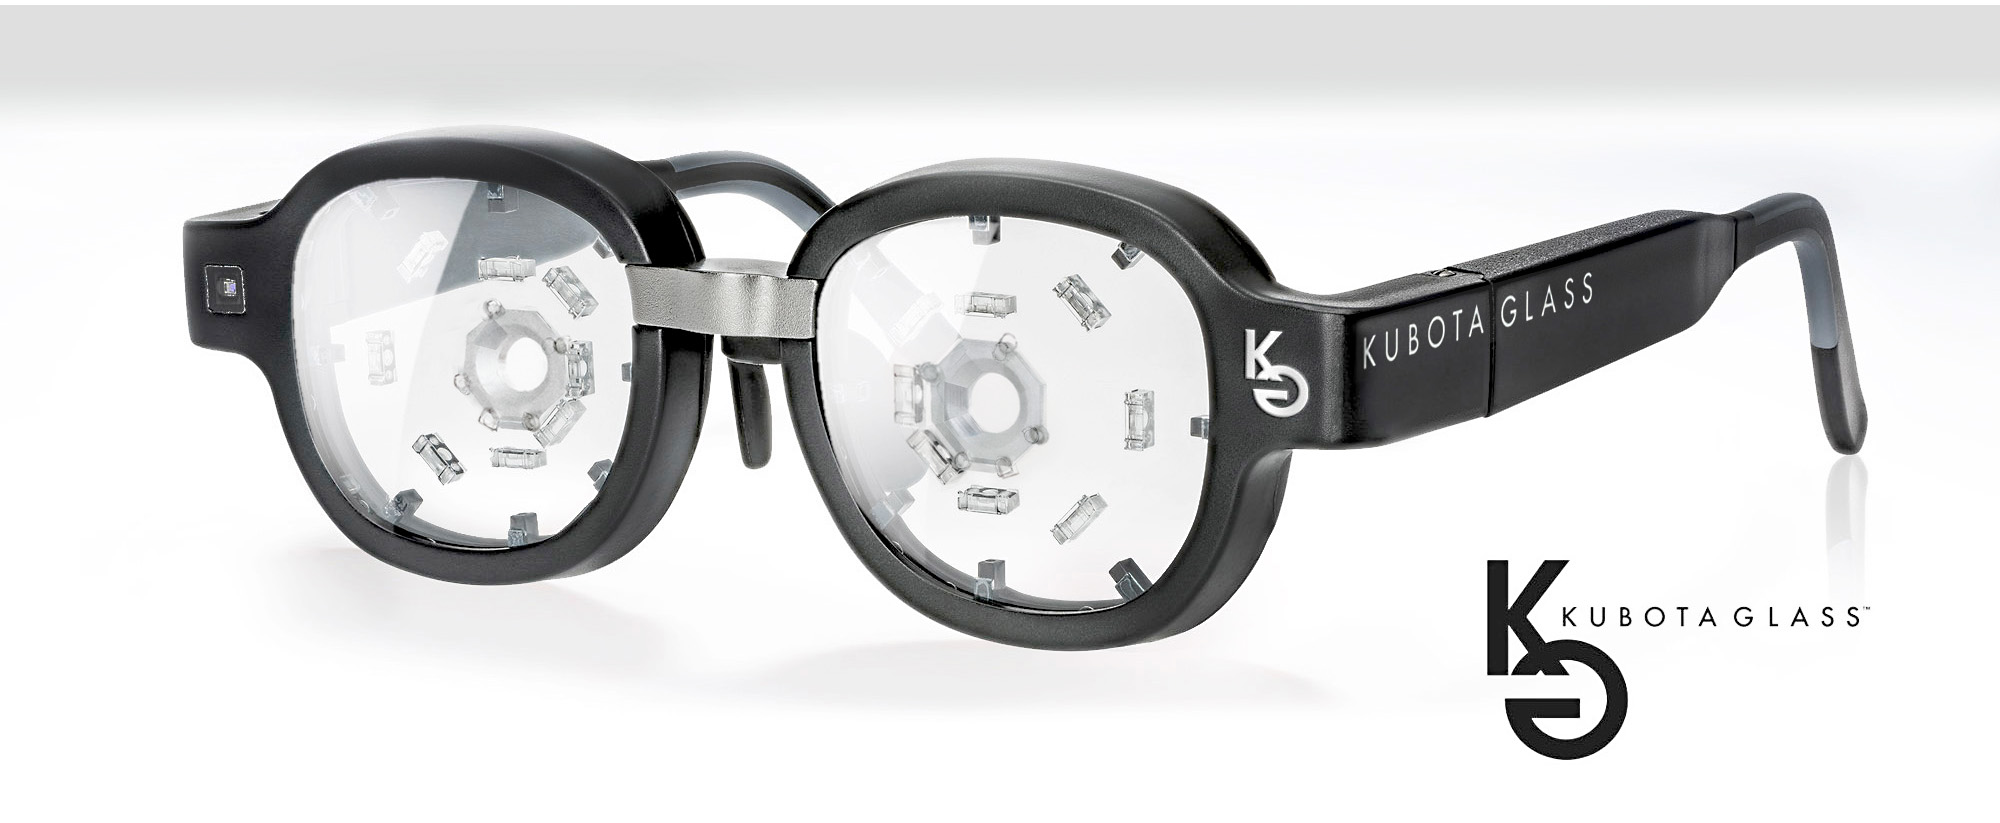 Kubota : Chiếc kính này có thể ngăn chặn và đảo ngược chứng cận thị